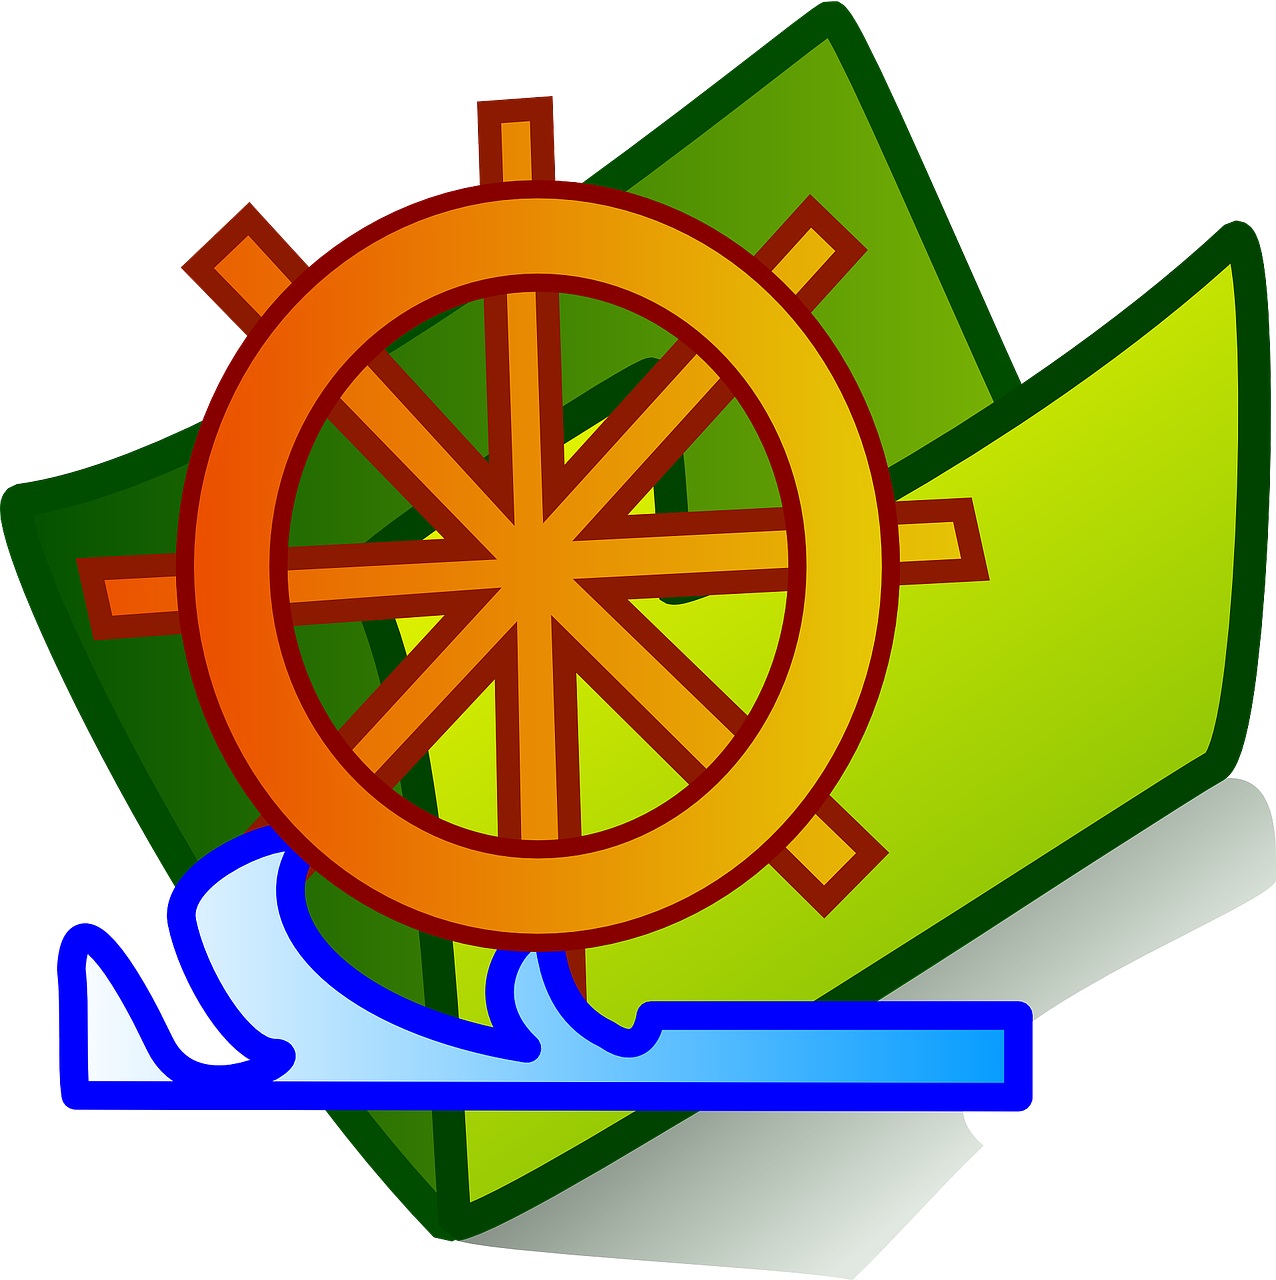 Ships wheel 28102 1280